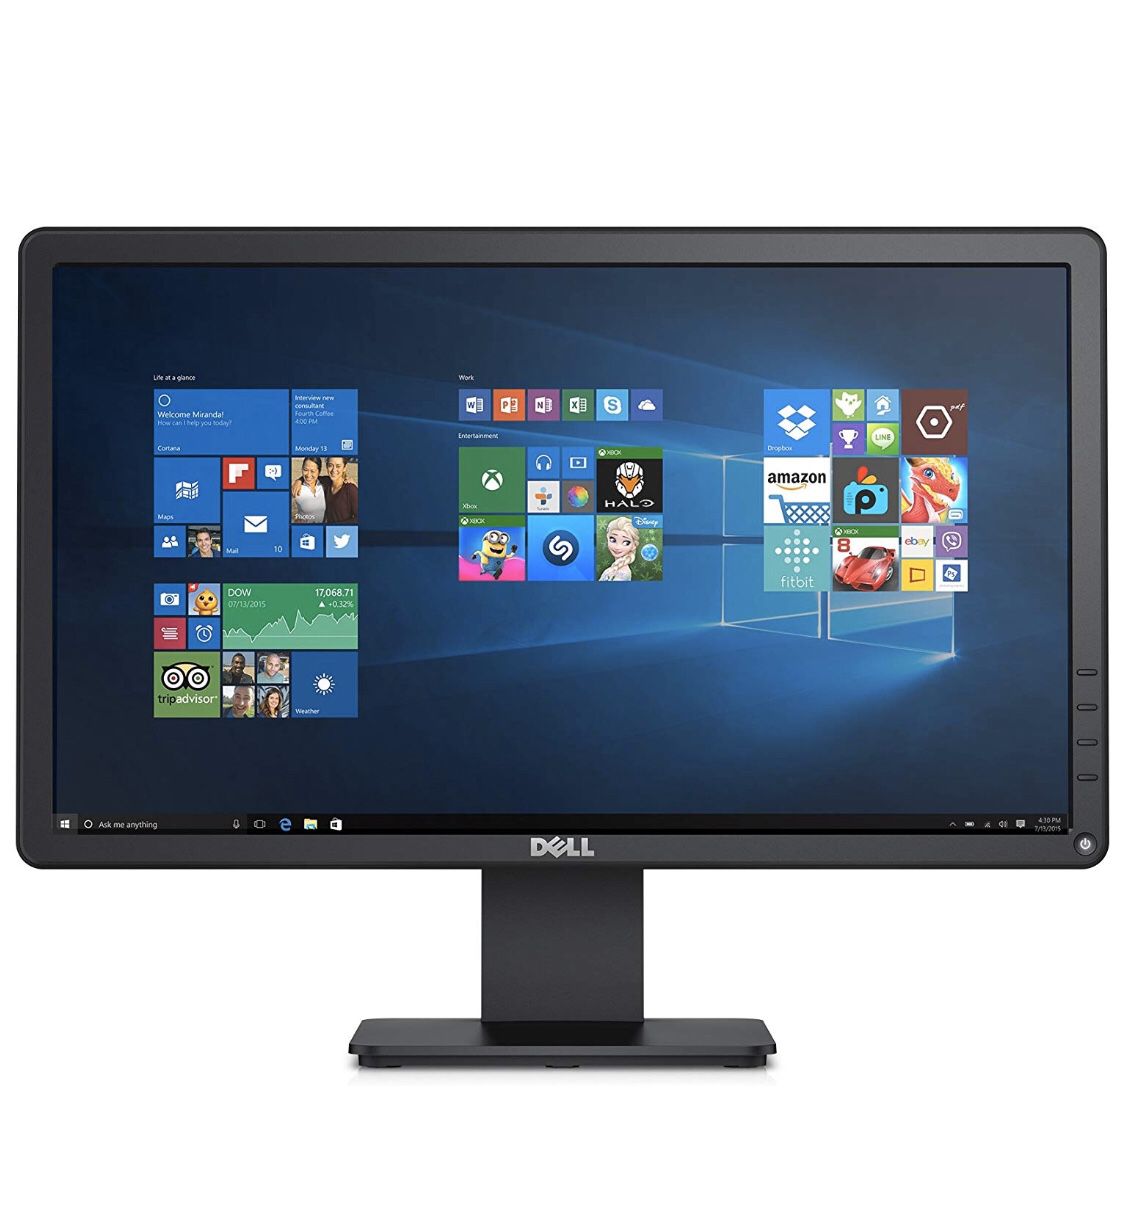 Dell 20” computer monitor E2015HVf VGA